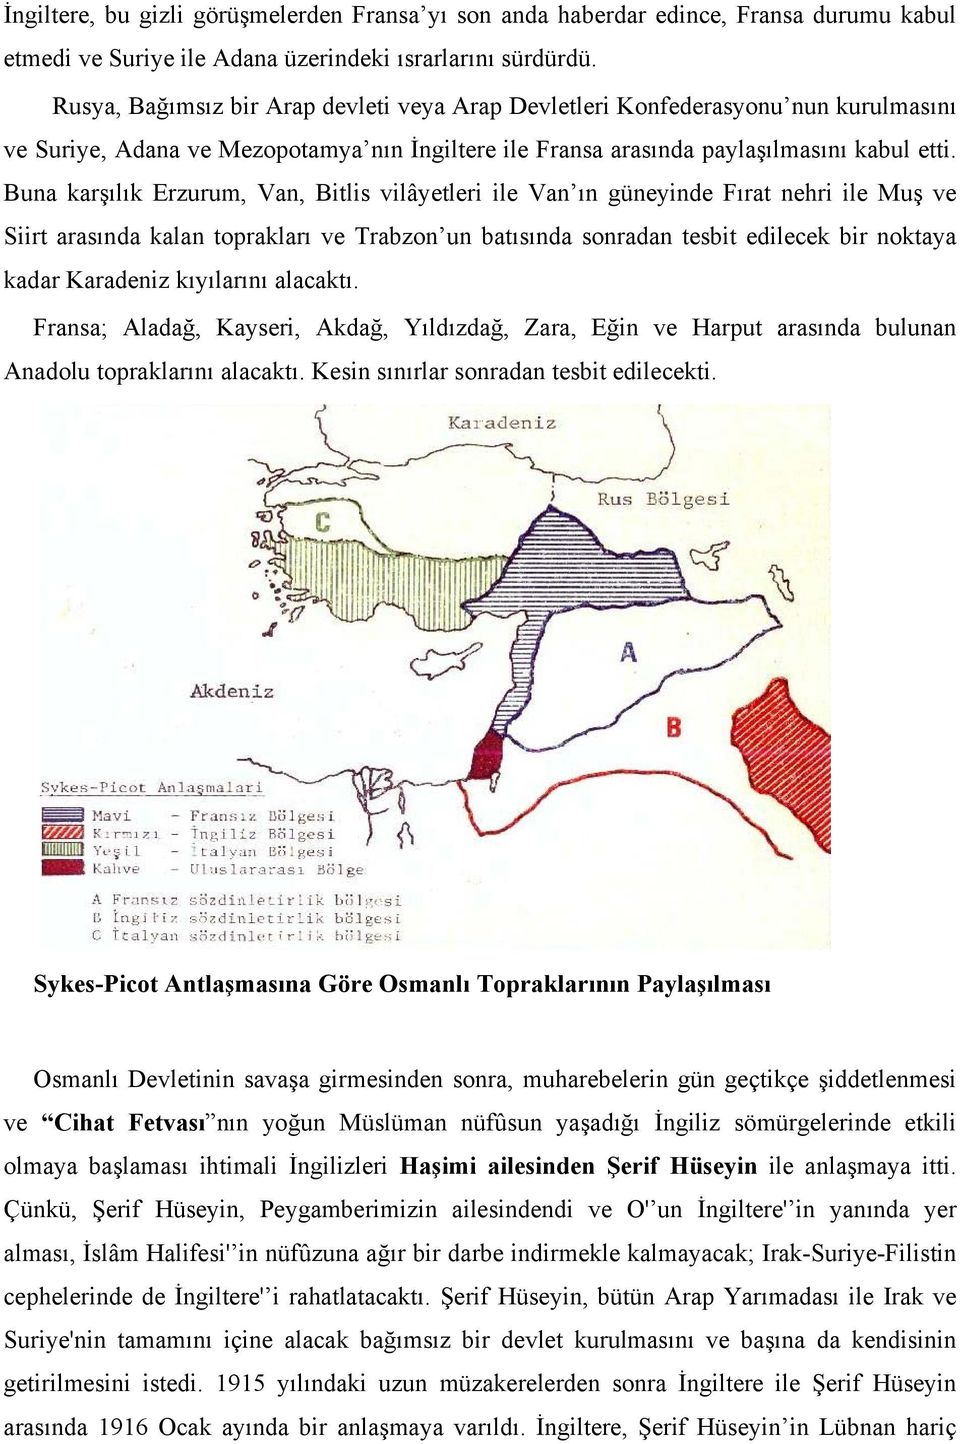 Buna karşılık Erzurum, Van, Bitlis vilâyetleri ile Van ın güneyinde Fırat nehri ile Muş ve Siirt arasında kalan toprakları ve Trabzon un batısında sonradan tesbit edilecek bir noktaya kadar Karadeniz